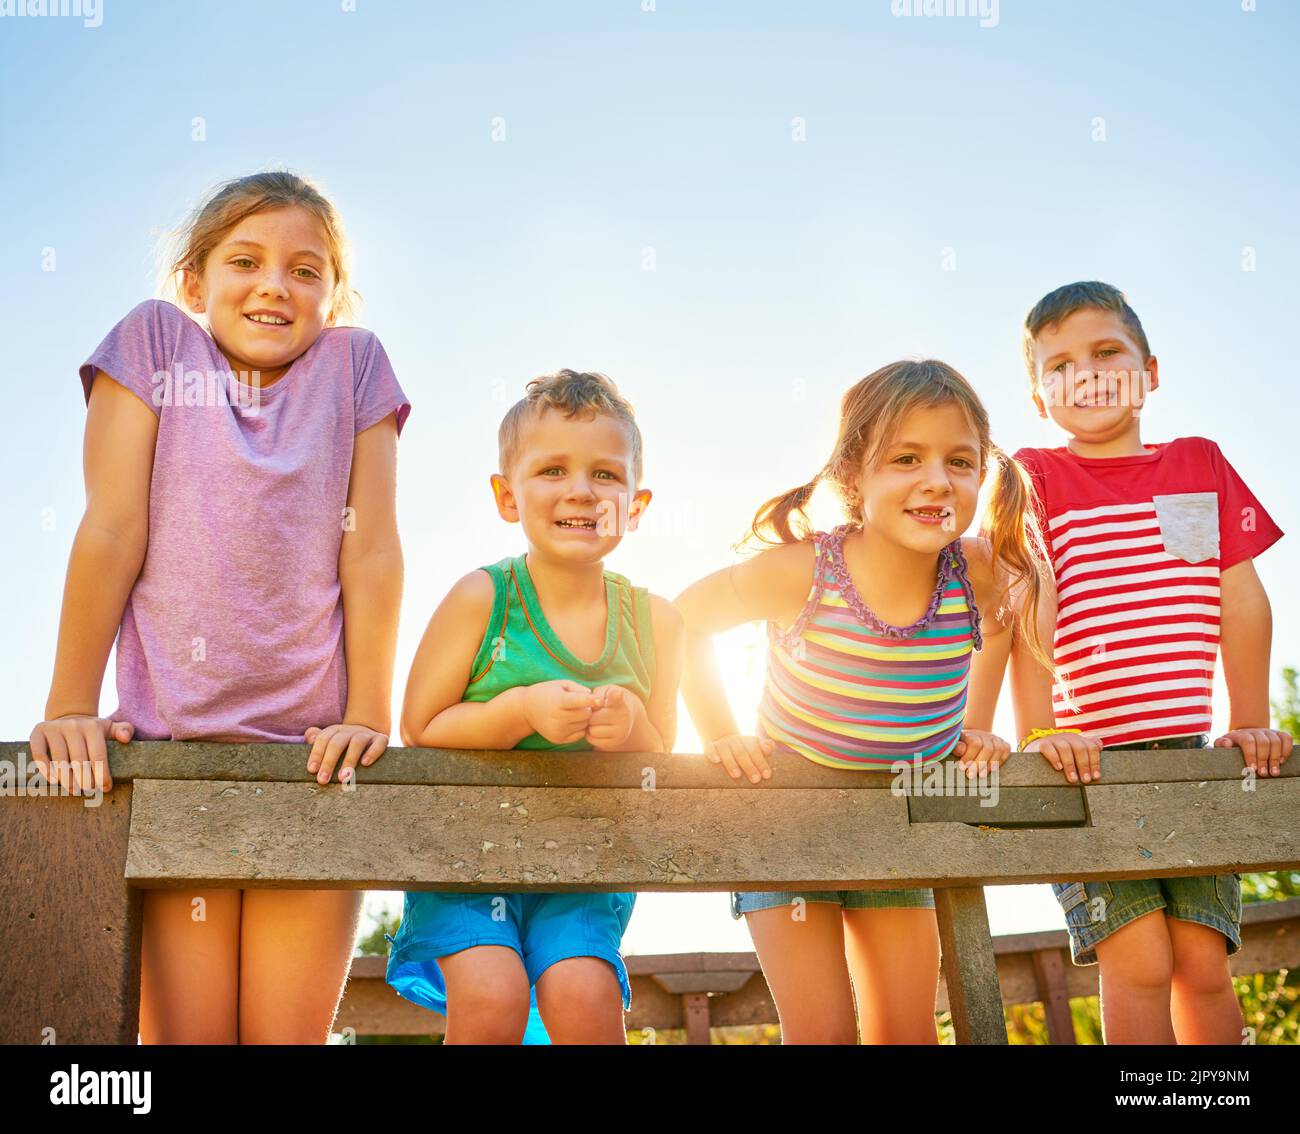 Viel Spaß in der Sommersonne. Porträt einer Gruppe von kleinen Kindern, die im Freien zusammen spielen. Stockfoto